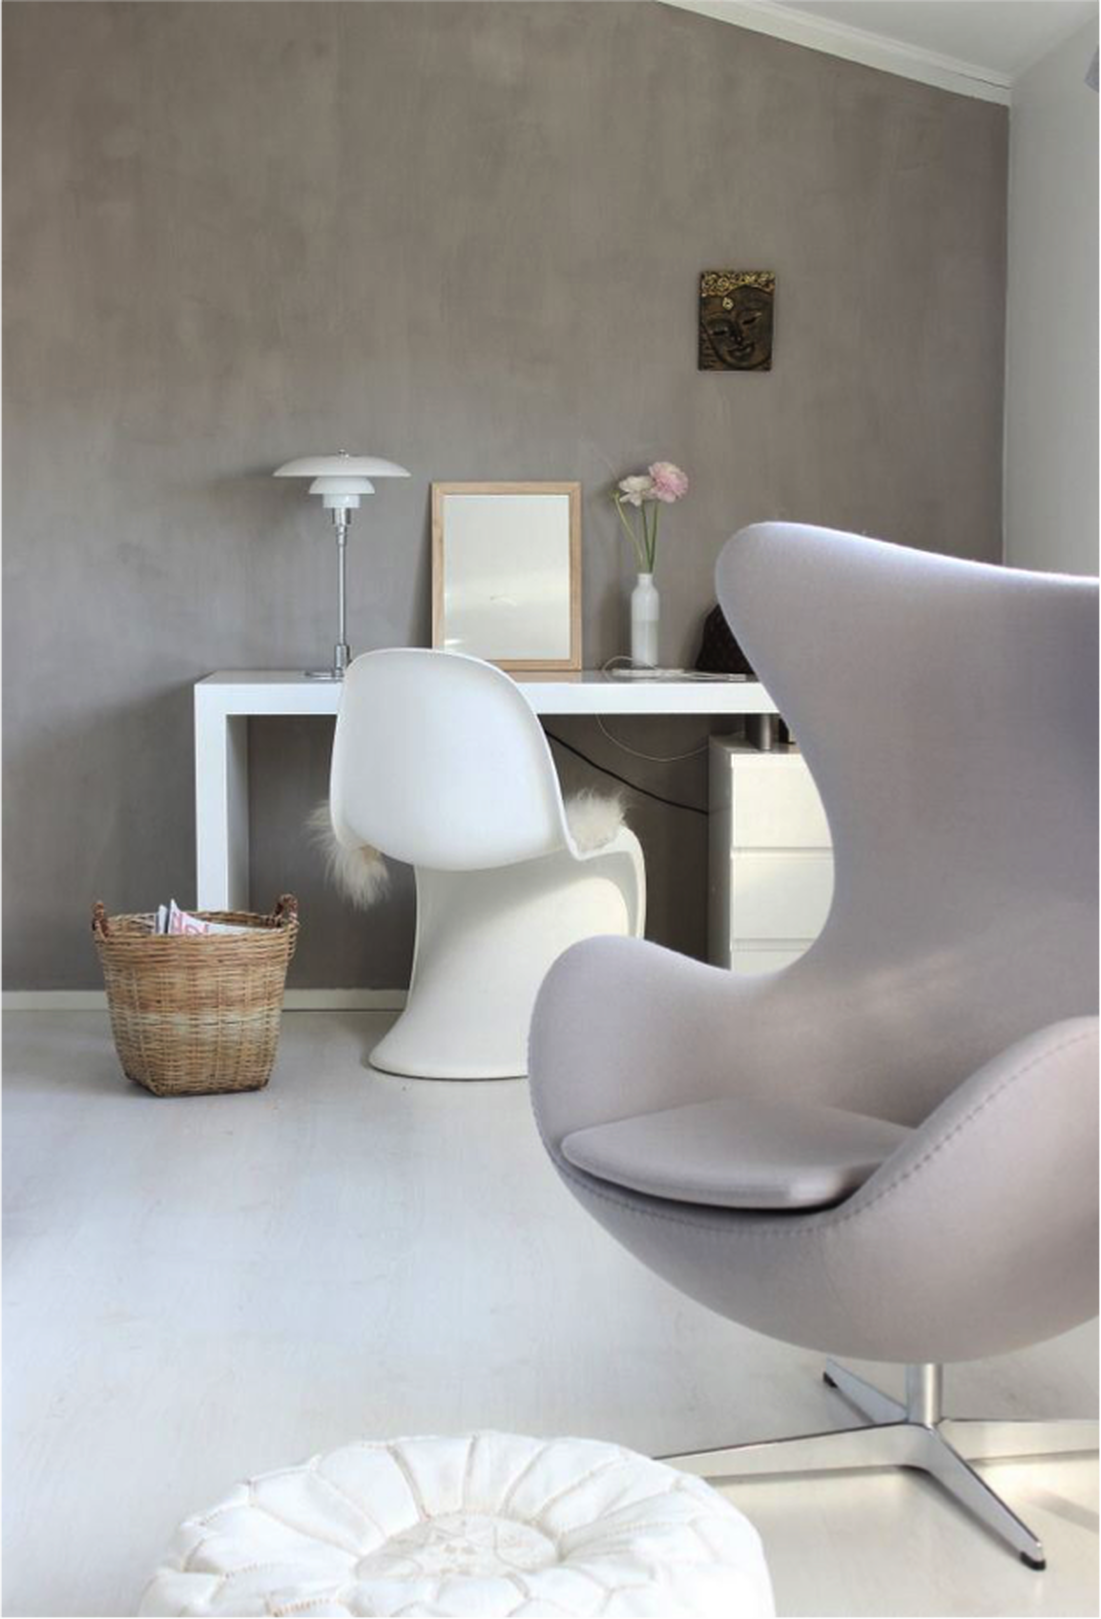 Grau und weiß - clean und schick! Das perfekte Interior Design-Duo